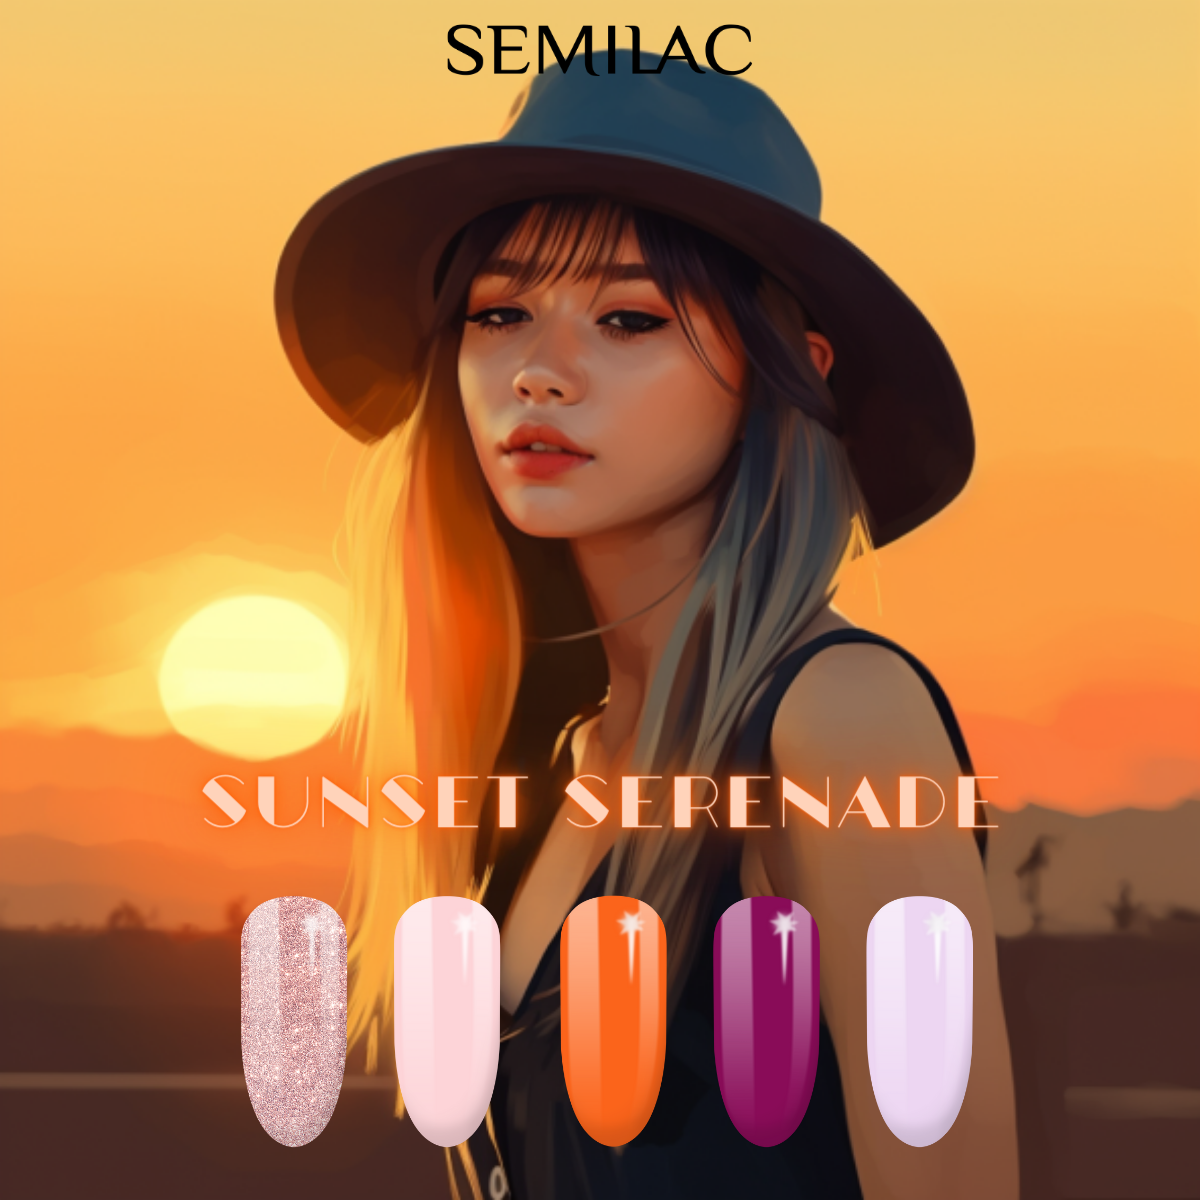 Semilac Sunset Serenade Bundle - Semilac UK